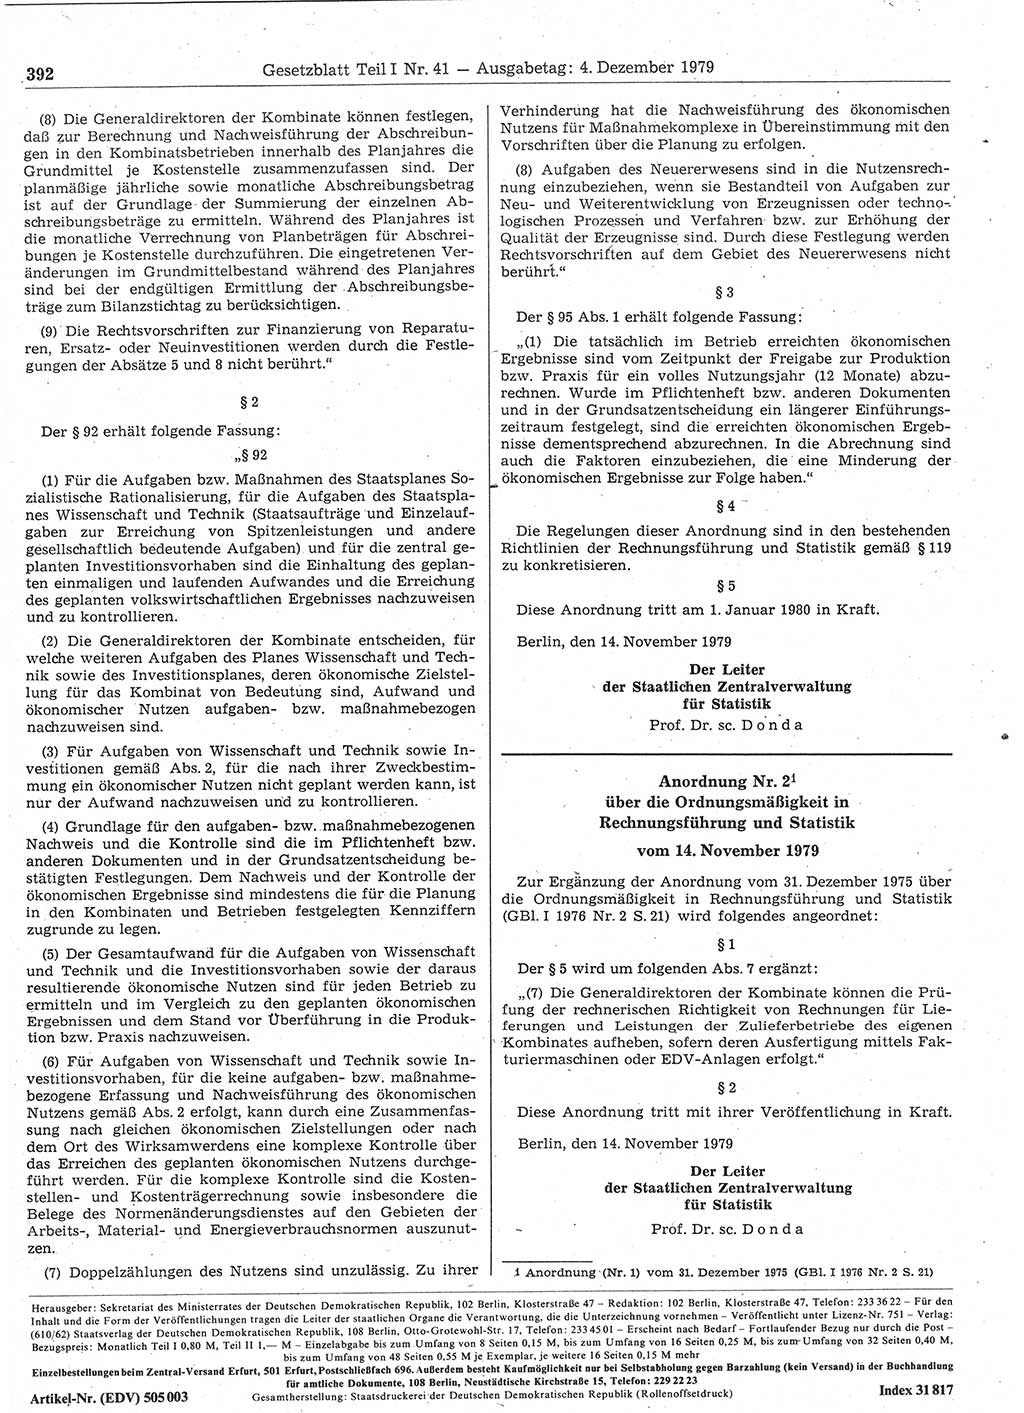 Gesetzblatt (GBl.) der Deutschen Demokratischen Republik (DDR) Teil Ⅰ 1979, Seite 392 (GBl. DDR Ⅰ 1979, S. 392)